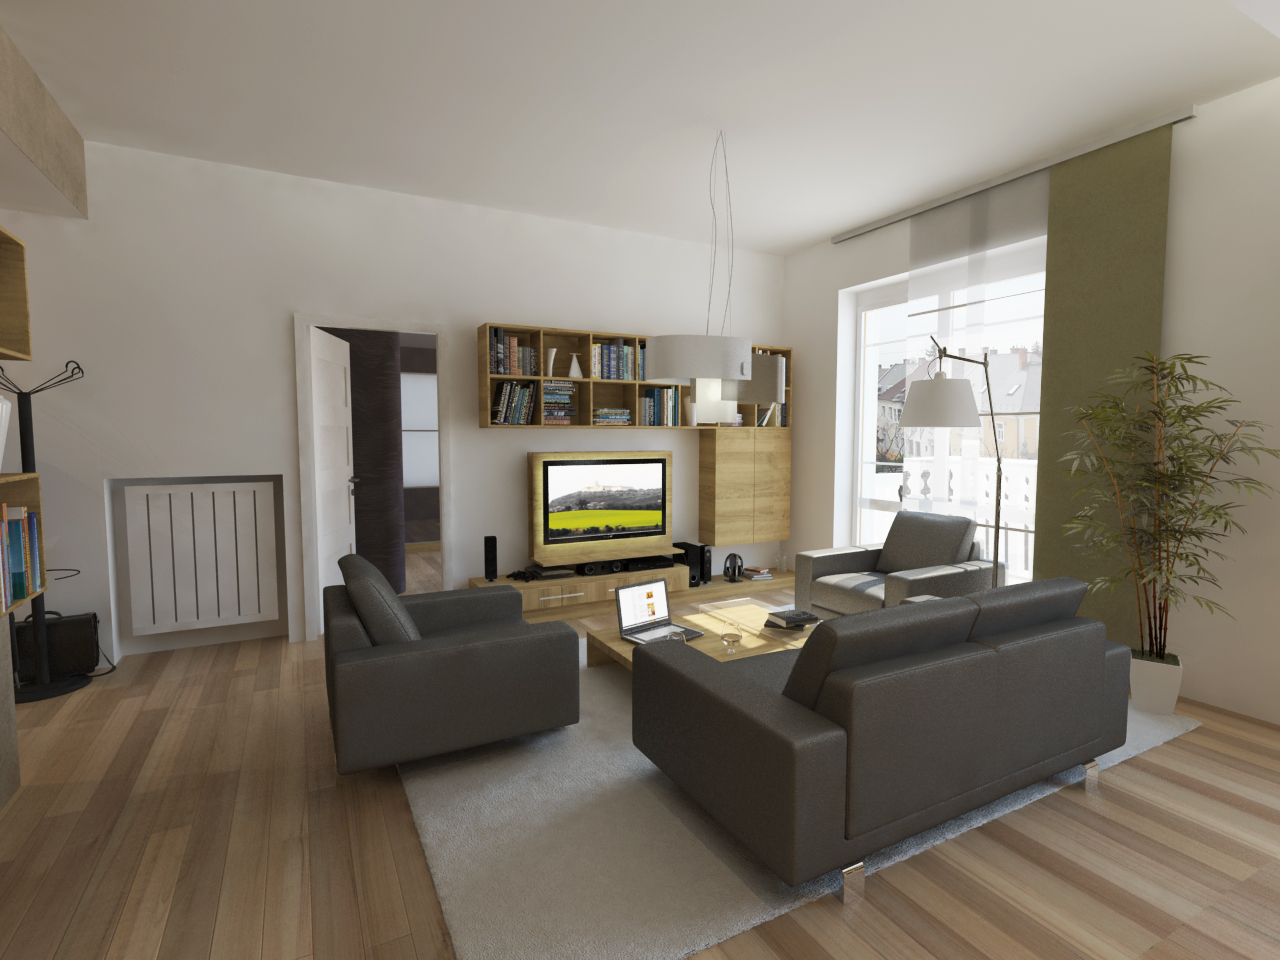 Látványterv nappali / Architectural visualization living room